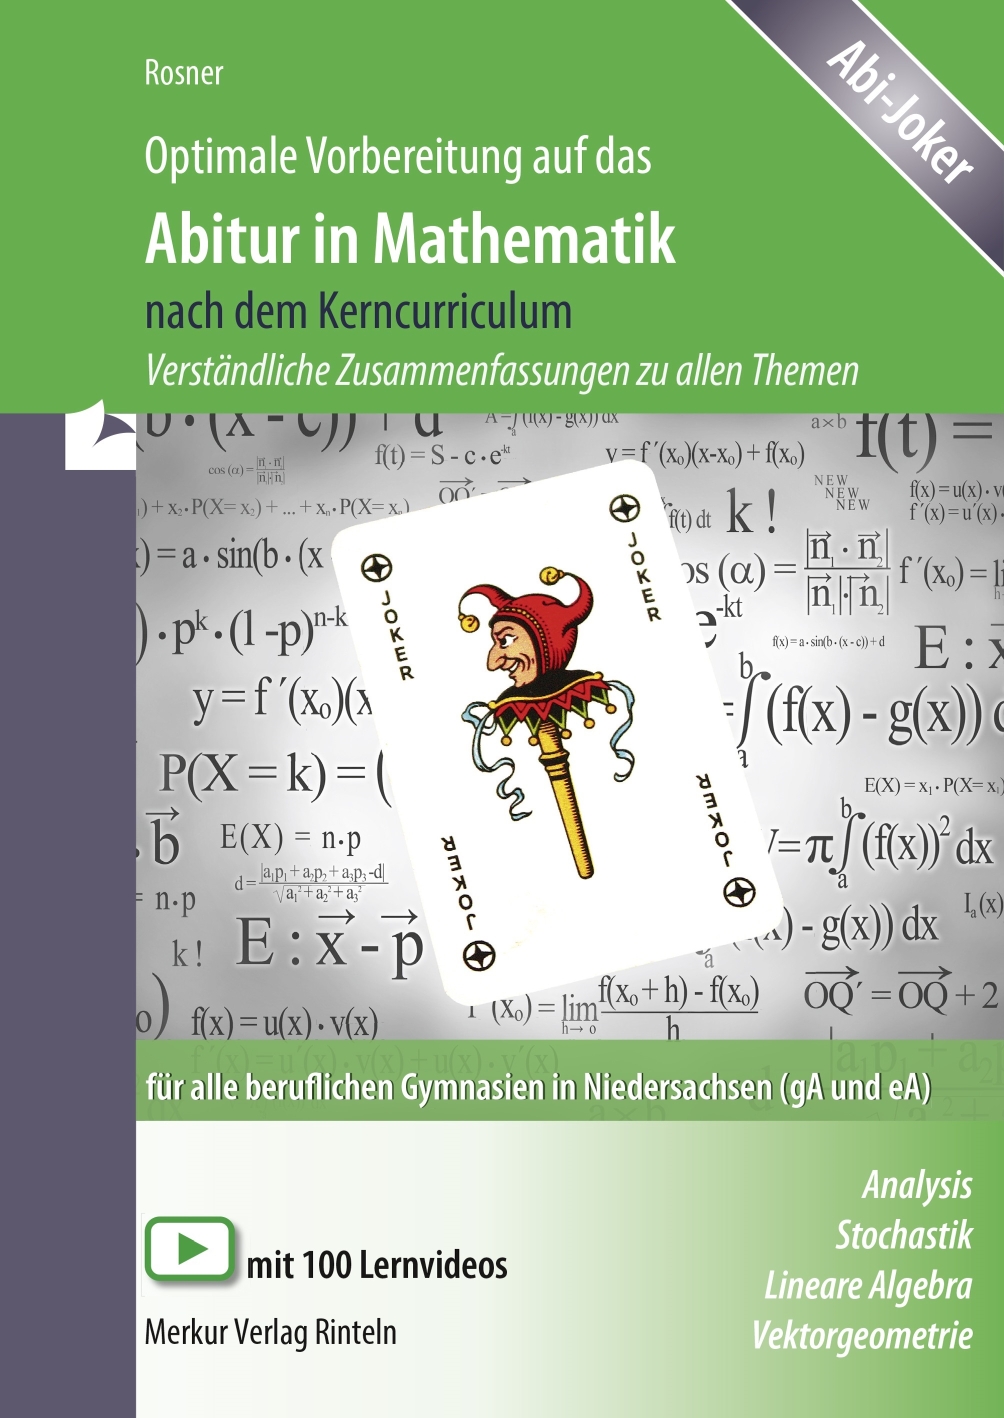 Optimale Vorbereitung auf das Abitur in Mathematik nach dem Kerncurriculum Verständliche Zusammenfassungen zu allen Themen für alle beruflichen Gymnasien in Niedersachsen (gA und eA)